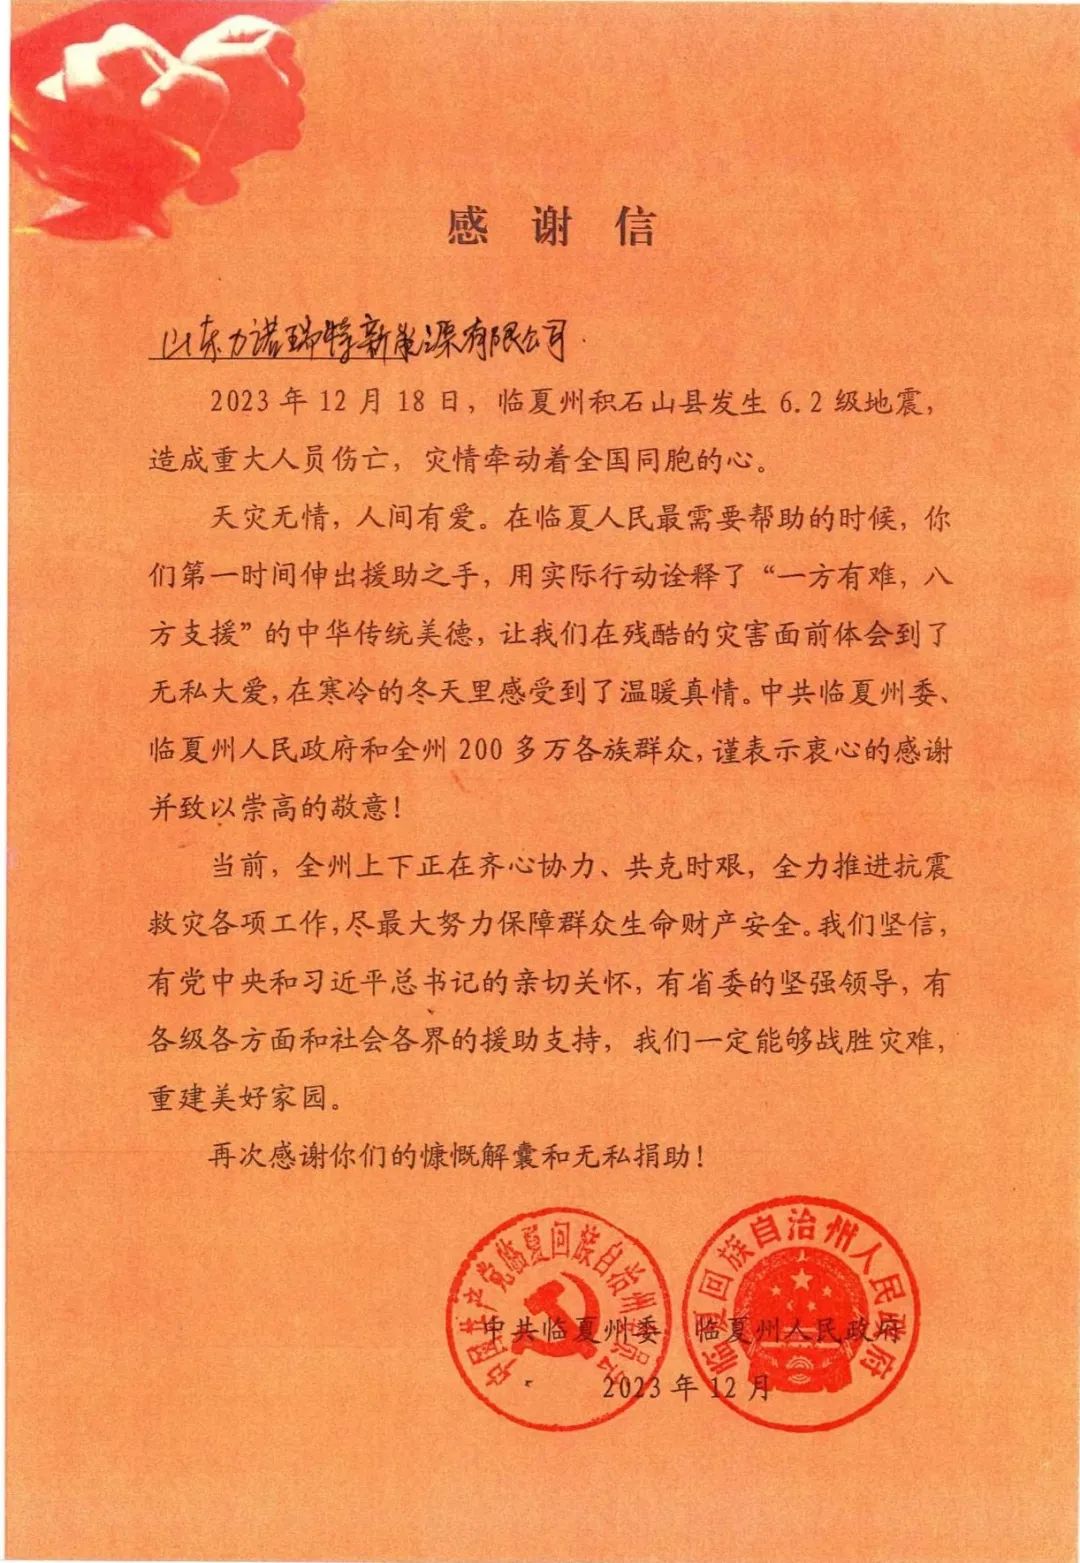 一封來自甘肅省臨夏州的感謝信